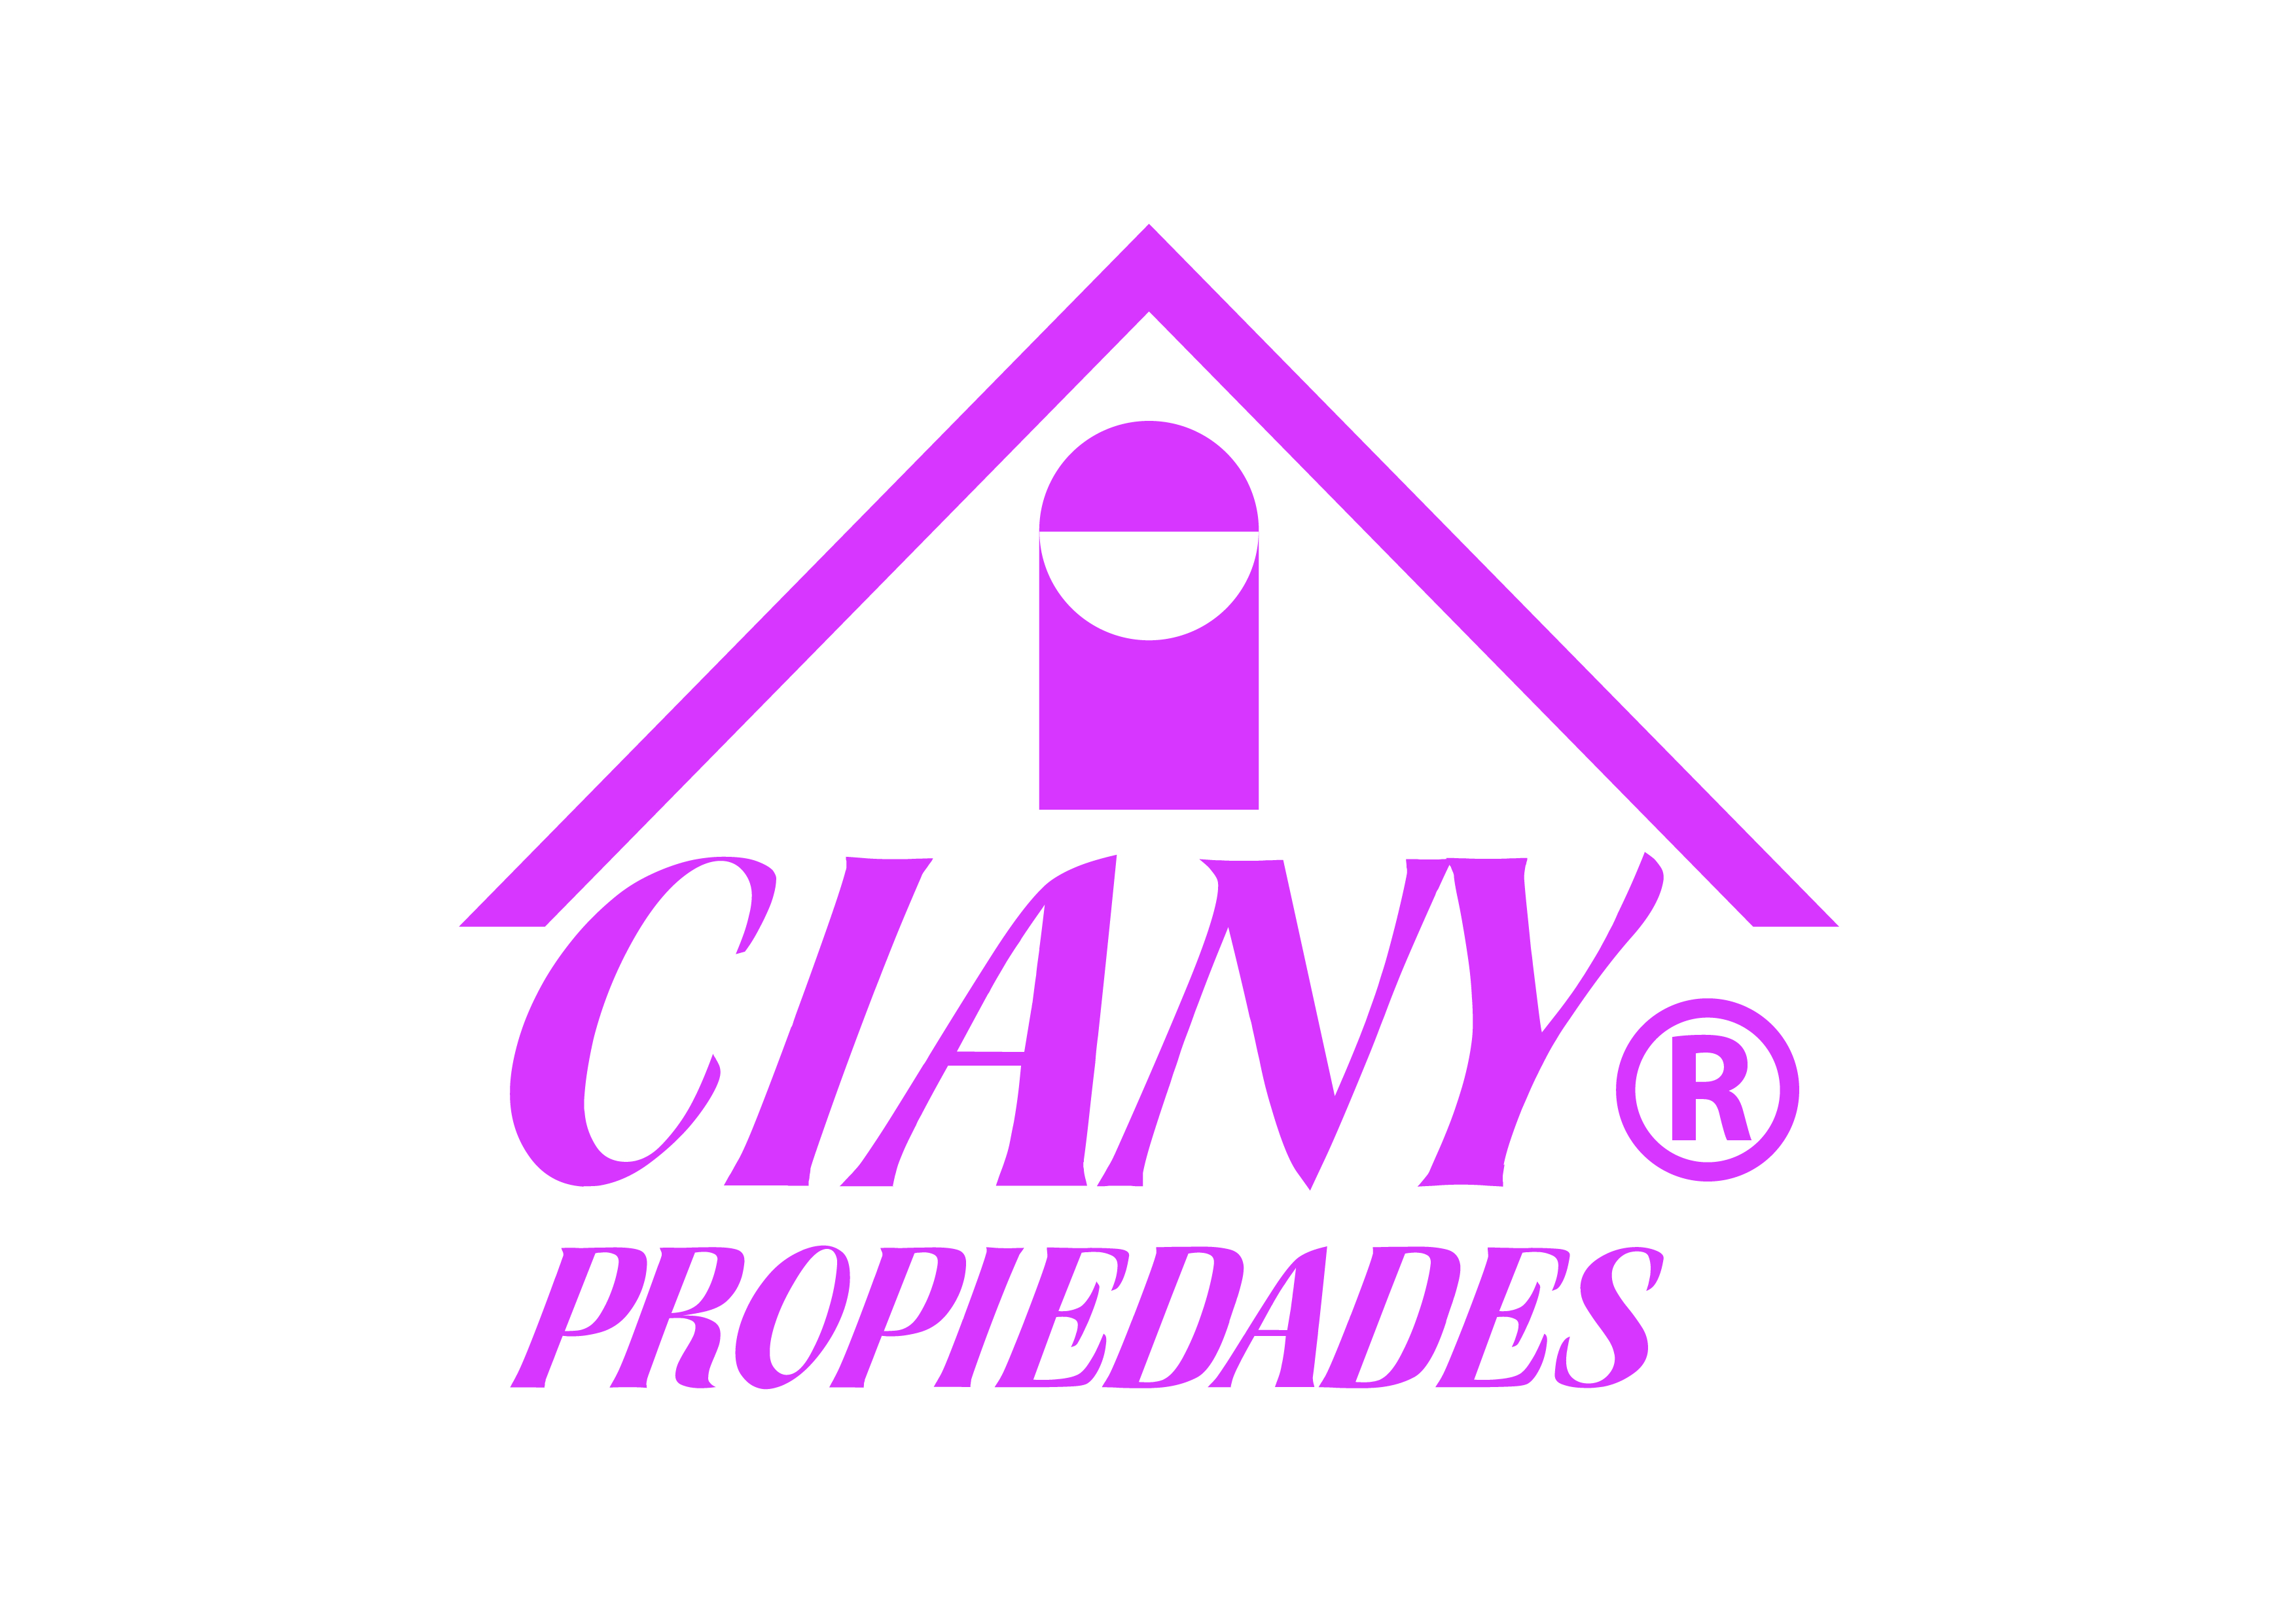 CIANY PROPIEDADES